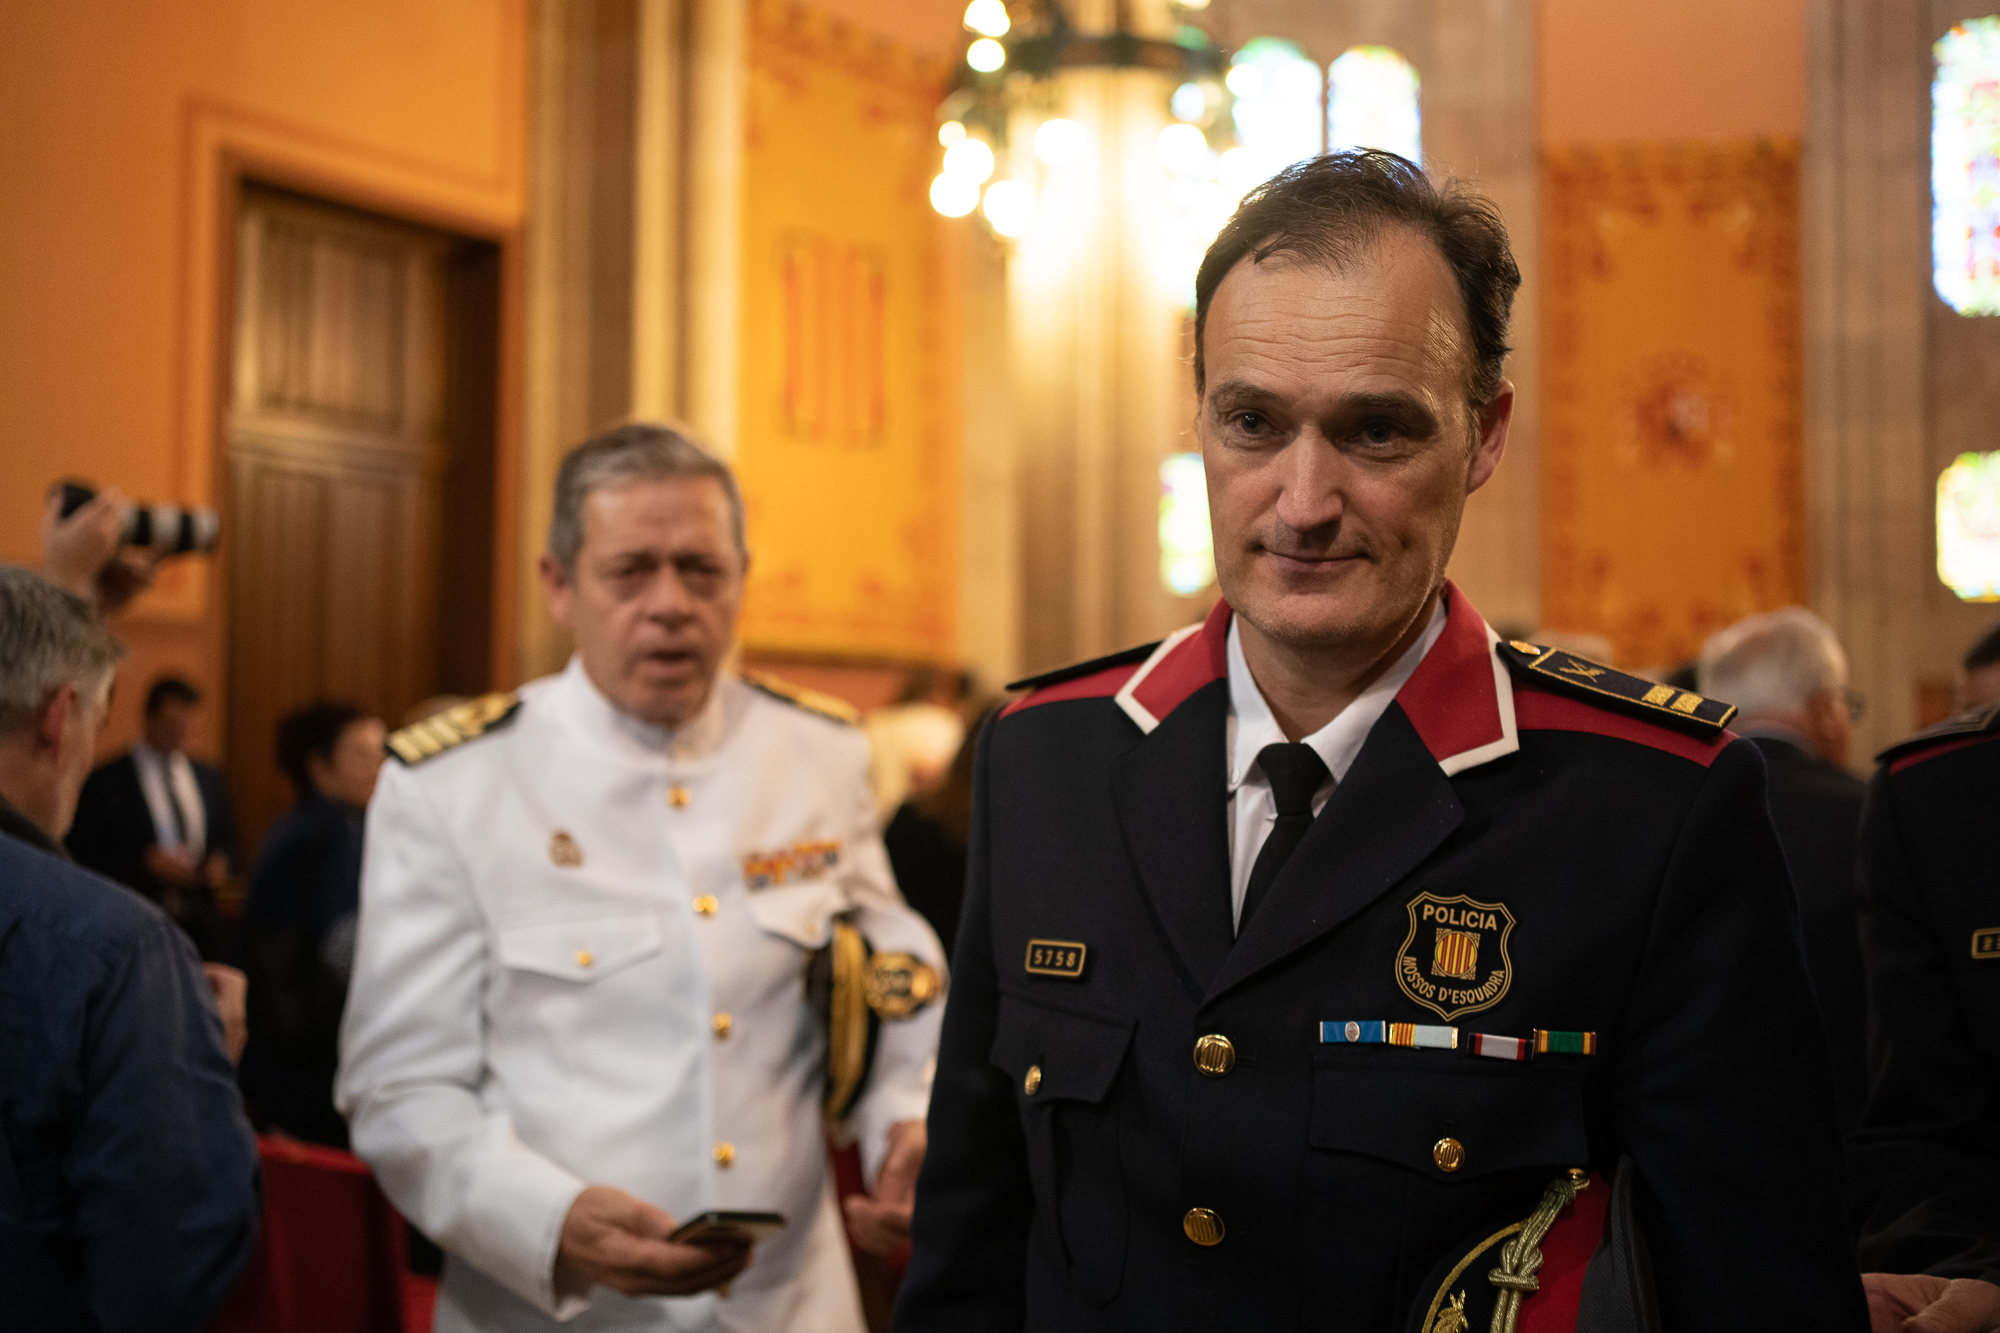 El cap dels Mossos, Eduard Sallent, en un acte al Palau de Justícia de Barcelona/ Mireia Comas